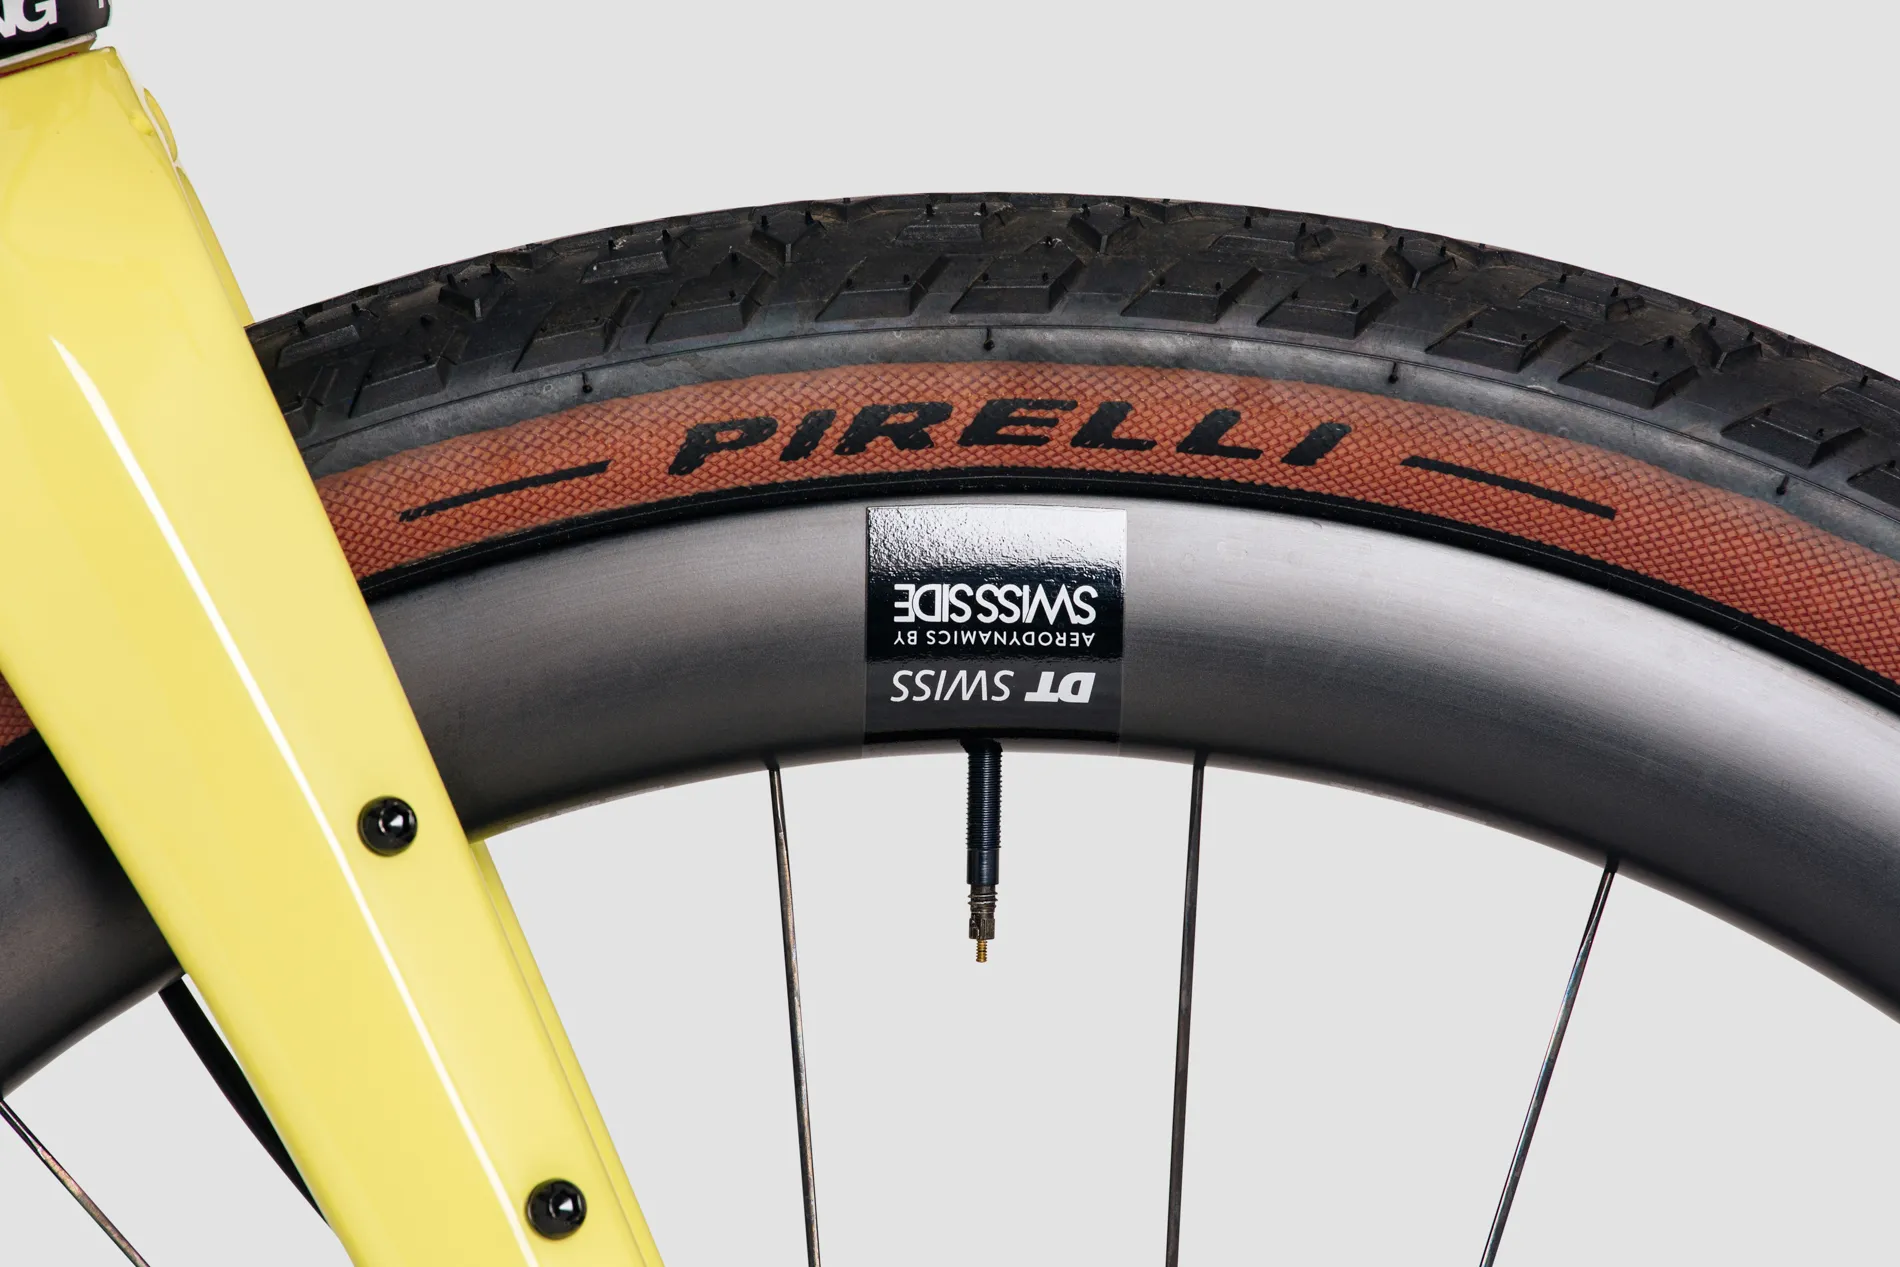 Pirelli tires of Erdgeschoss steel gravel bike in yellow colour